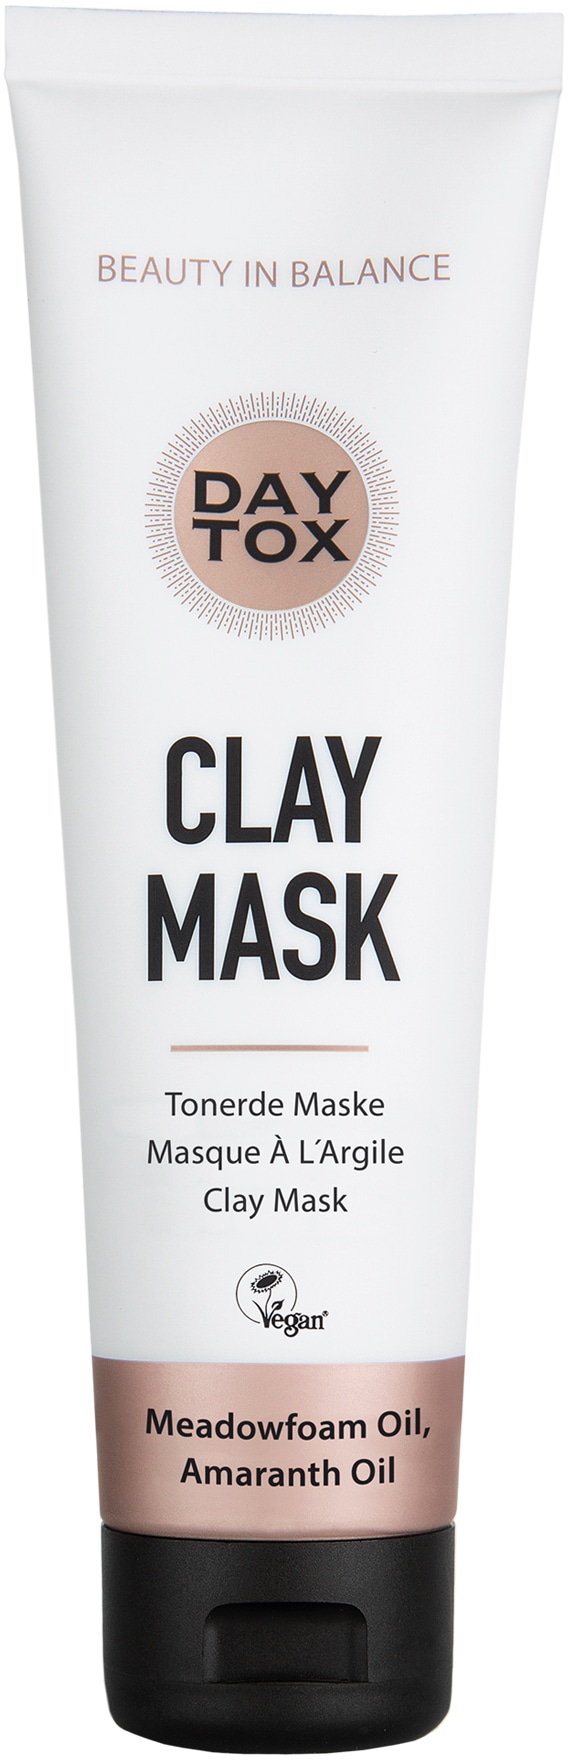 DAYTOX Gesichtsmaske »Daytox Clay Mask« kaufen - OTTO Weihnachts-Shop